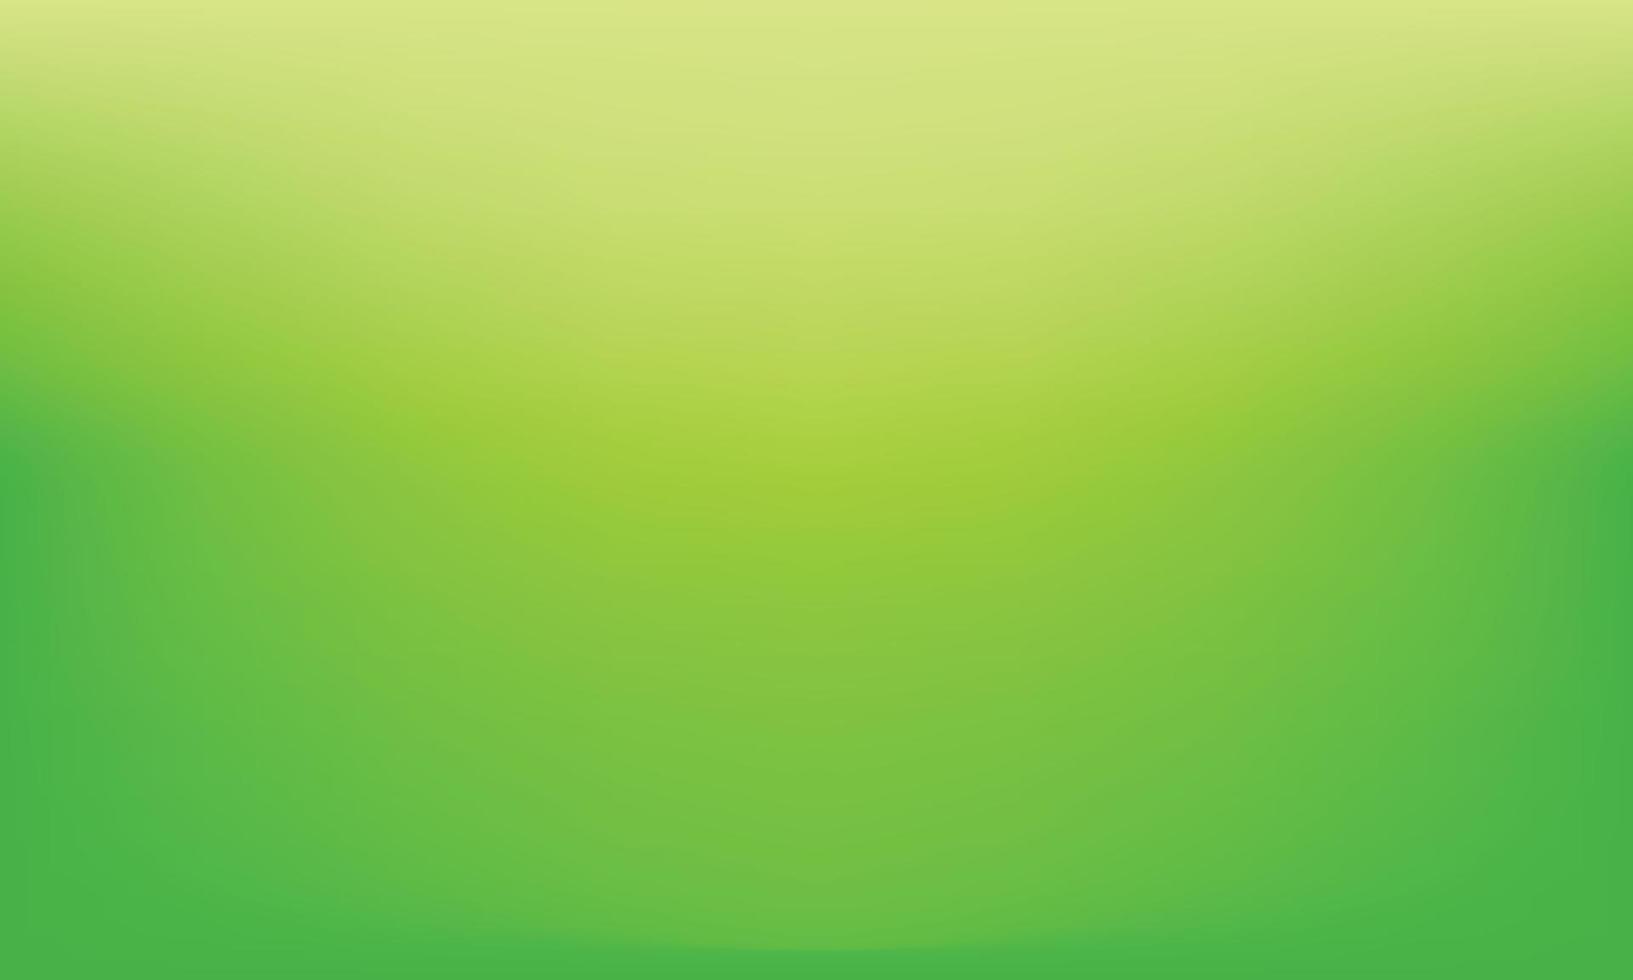 fundo abstrato gradiente verde limão padrão escuro borrão estúdio gradiente verde vazio bem para fundo, modelo de site, quadro, relatório de negócios vetor